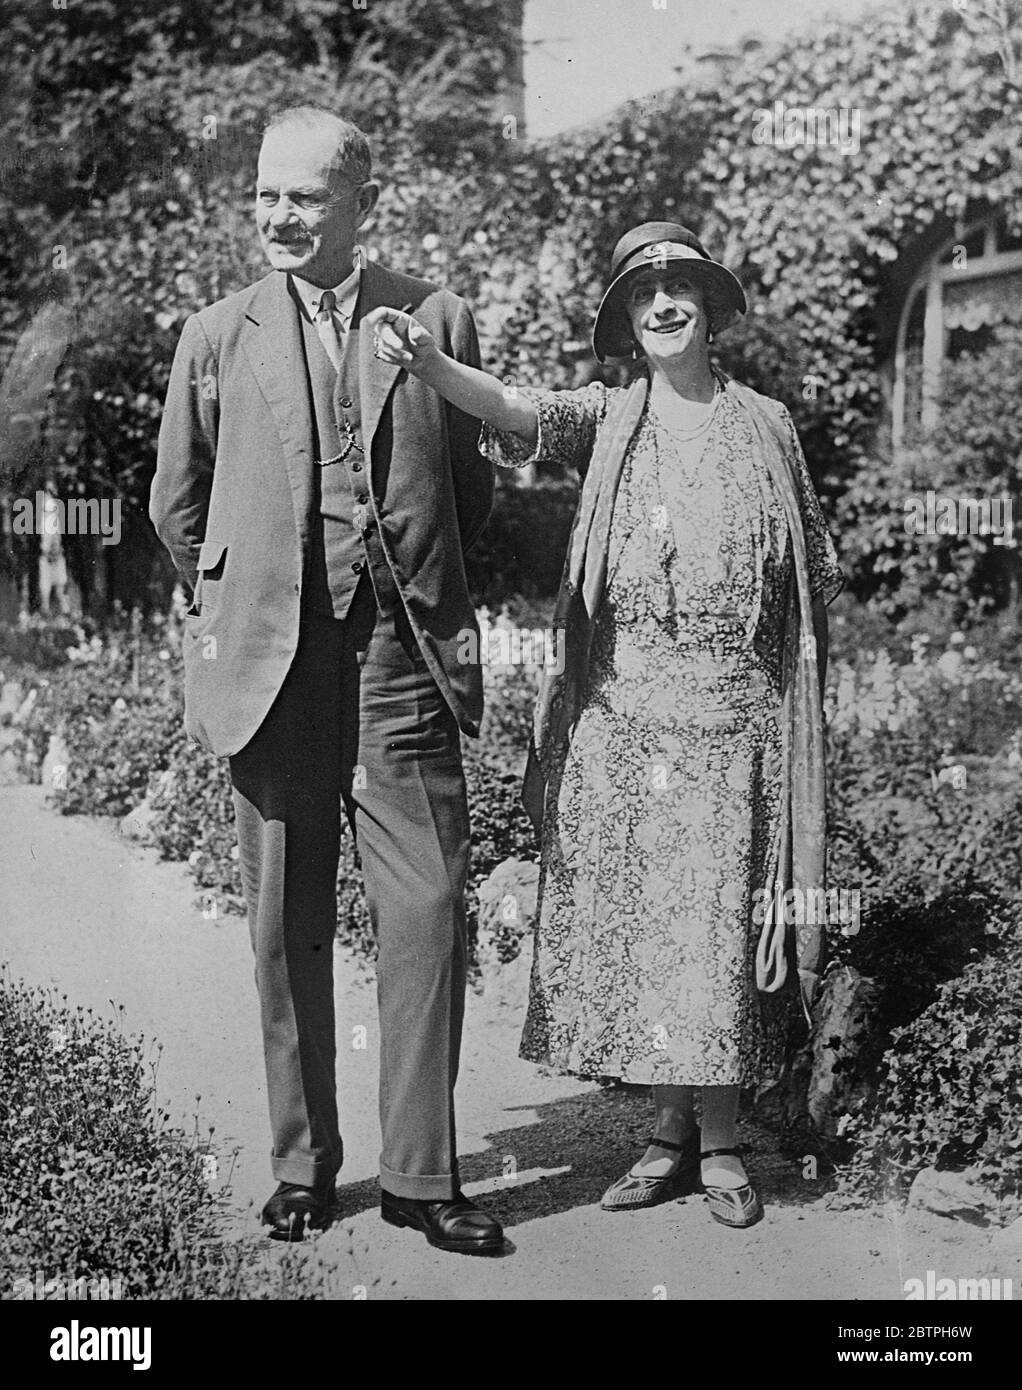 Viscount Byng in Kalifornien. Viscount und Viscount Byng, die auf einer Gesundheitskreuzfahrt auf West Indies waren, bereisen jetzt Kalifornien. Viscount und Viscountess Byng, fotografiert in Pasadena, Kalifornien. 29 März 1932 Stockfoto